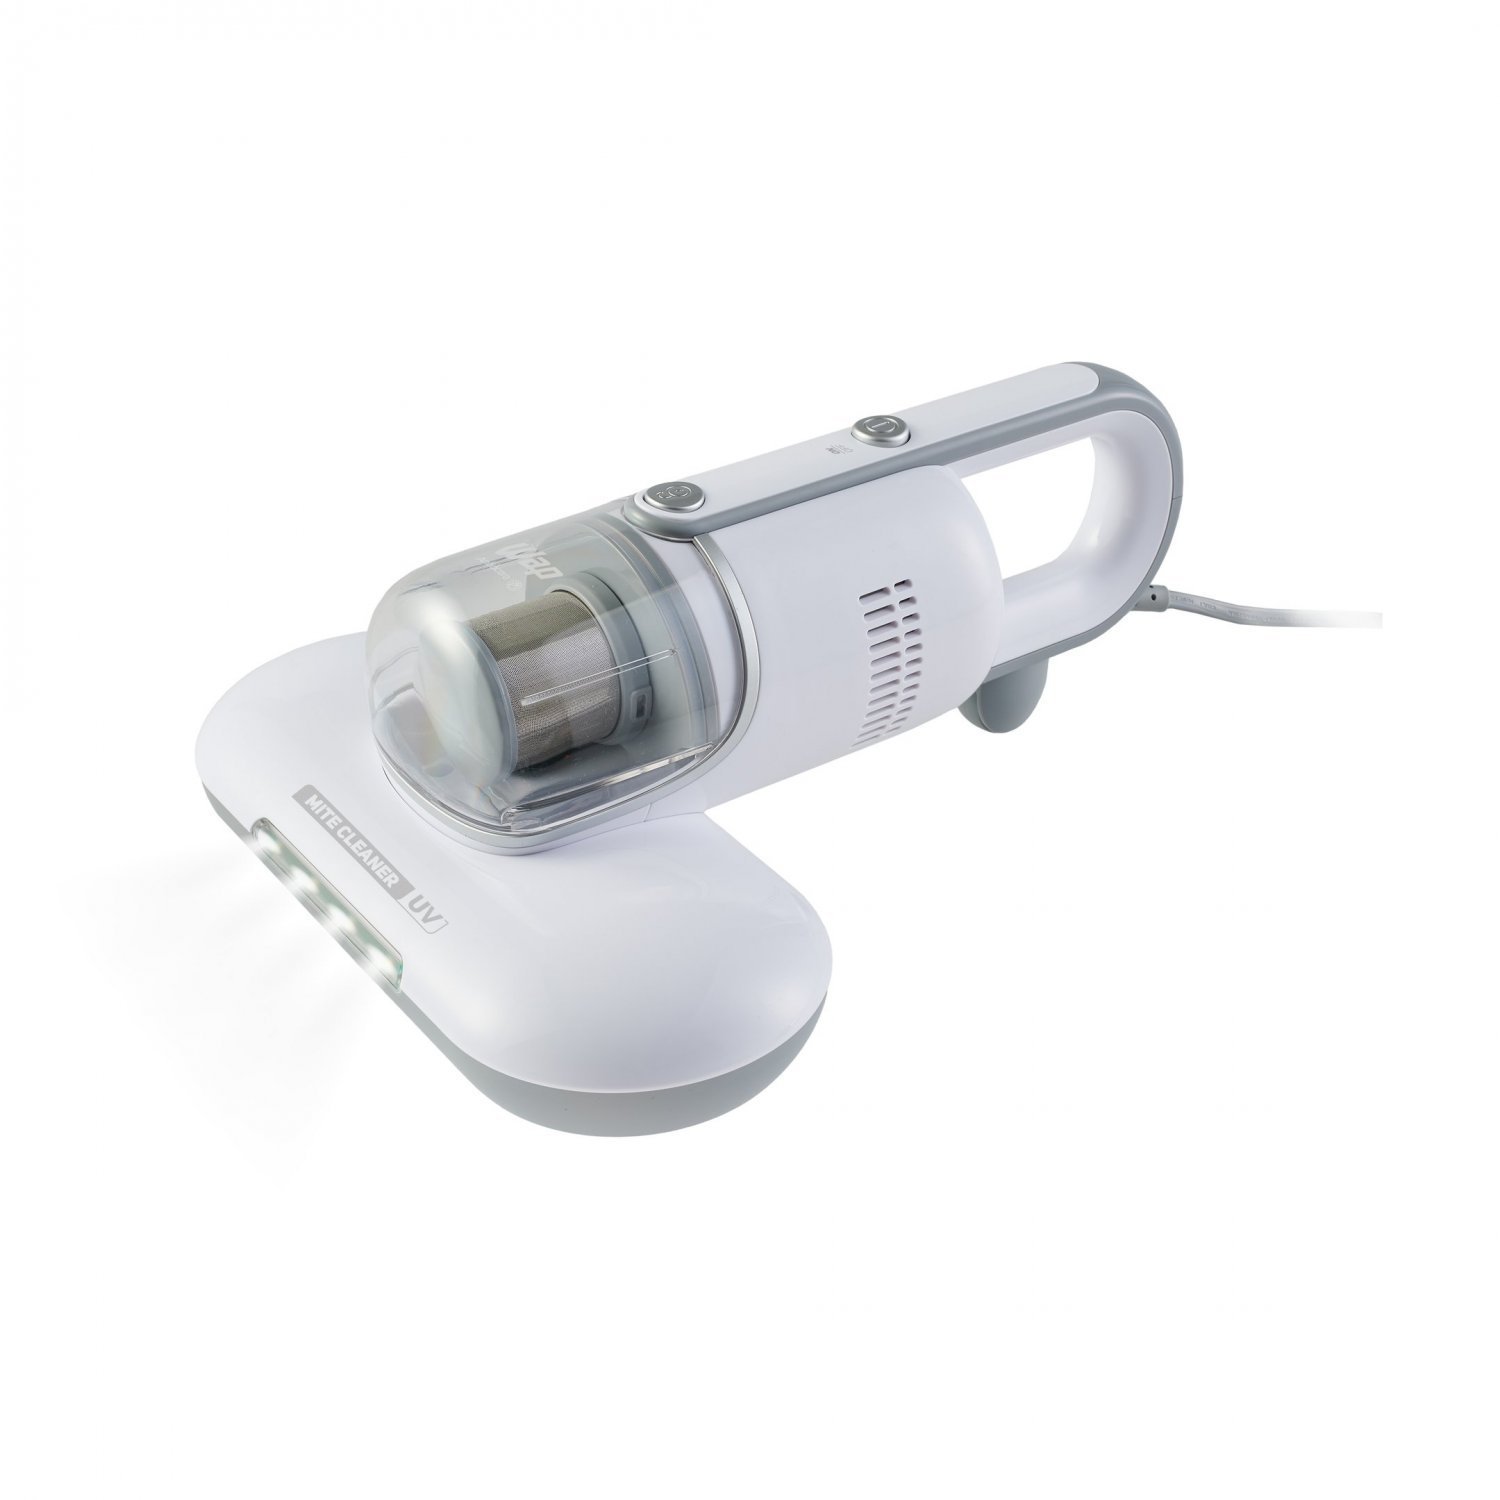 Aspirador de Pó Antiácaro WAP Mite Cleaner UV 3 em 1 com Lâmpada Ultravioleta 220V Branco - 3